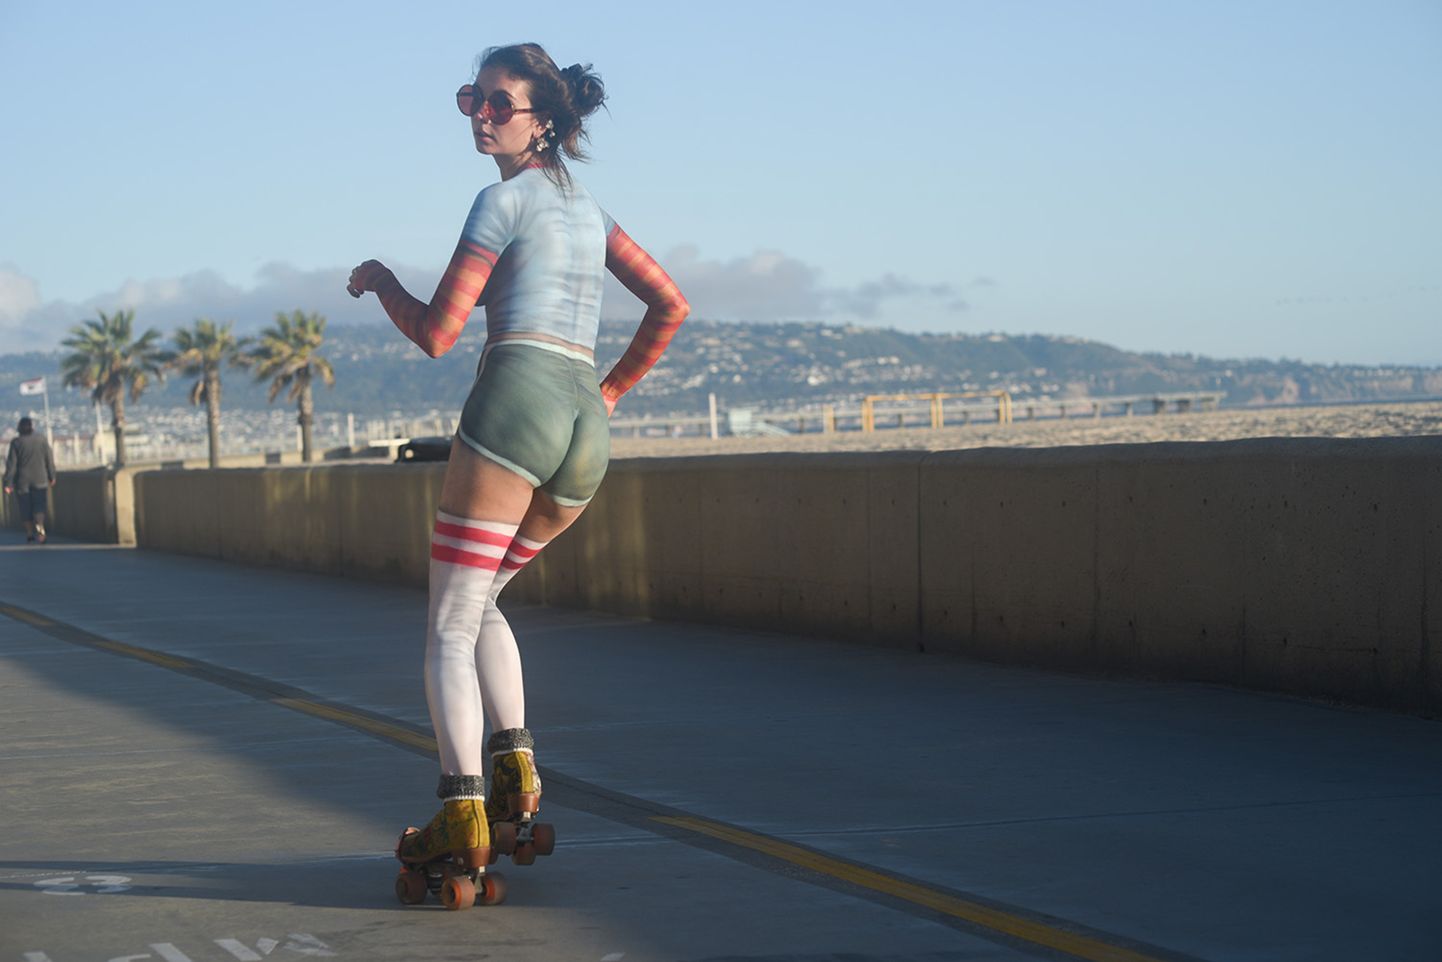 Обнаженная девушка катается на роликах по набережной в солнечной Калифорнии. Ее тело разрисовано боди-артом.